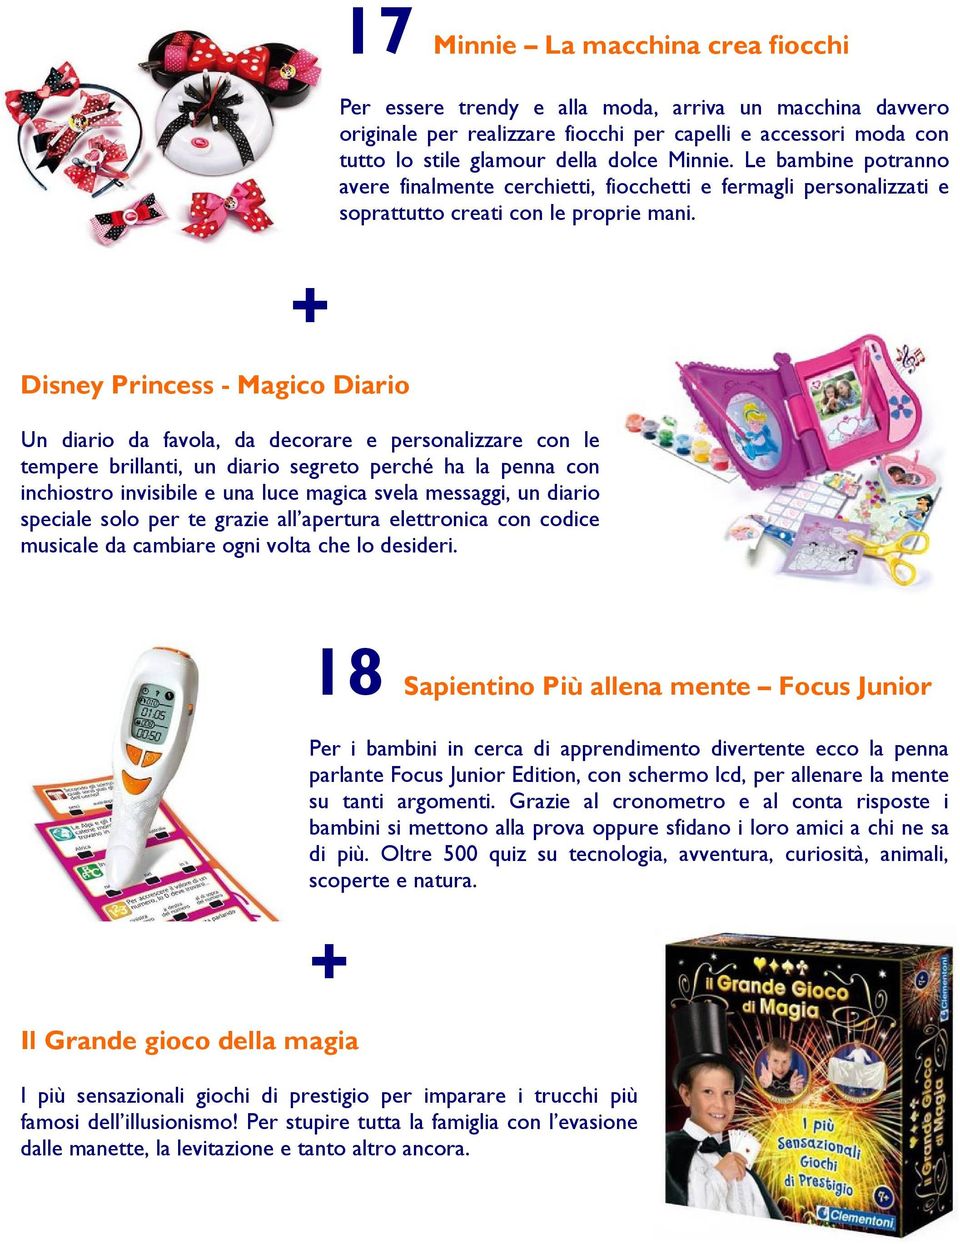 Disney Princess - Magico Diario Un diario da favola, da decorare e personalizzare con le tempere brillanti, un diario segreto perché ha la penna con inchiostro invisibile e una luce magica svela